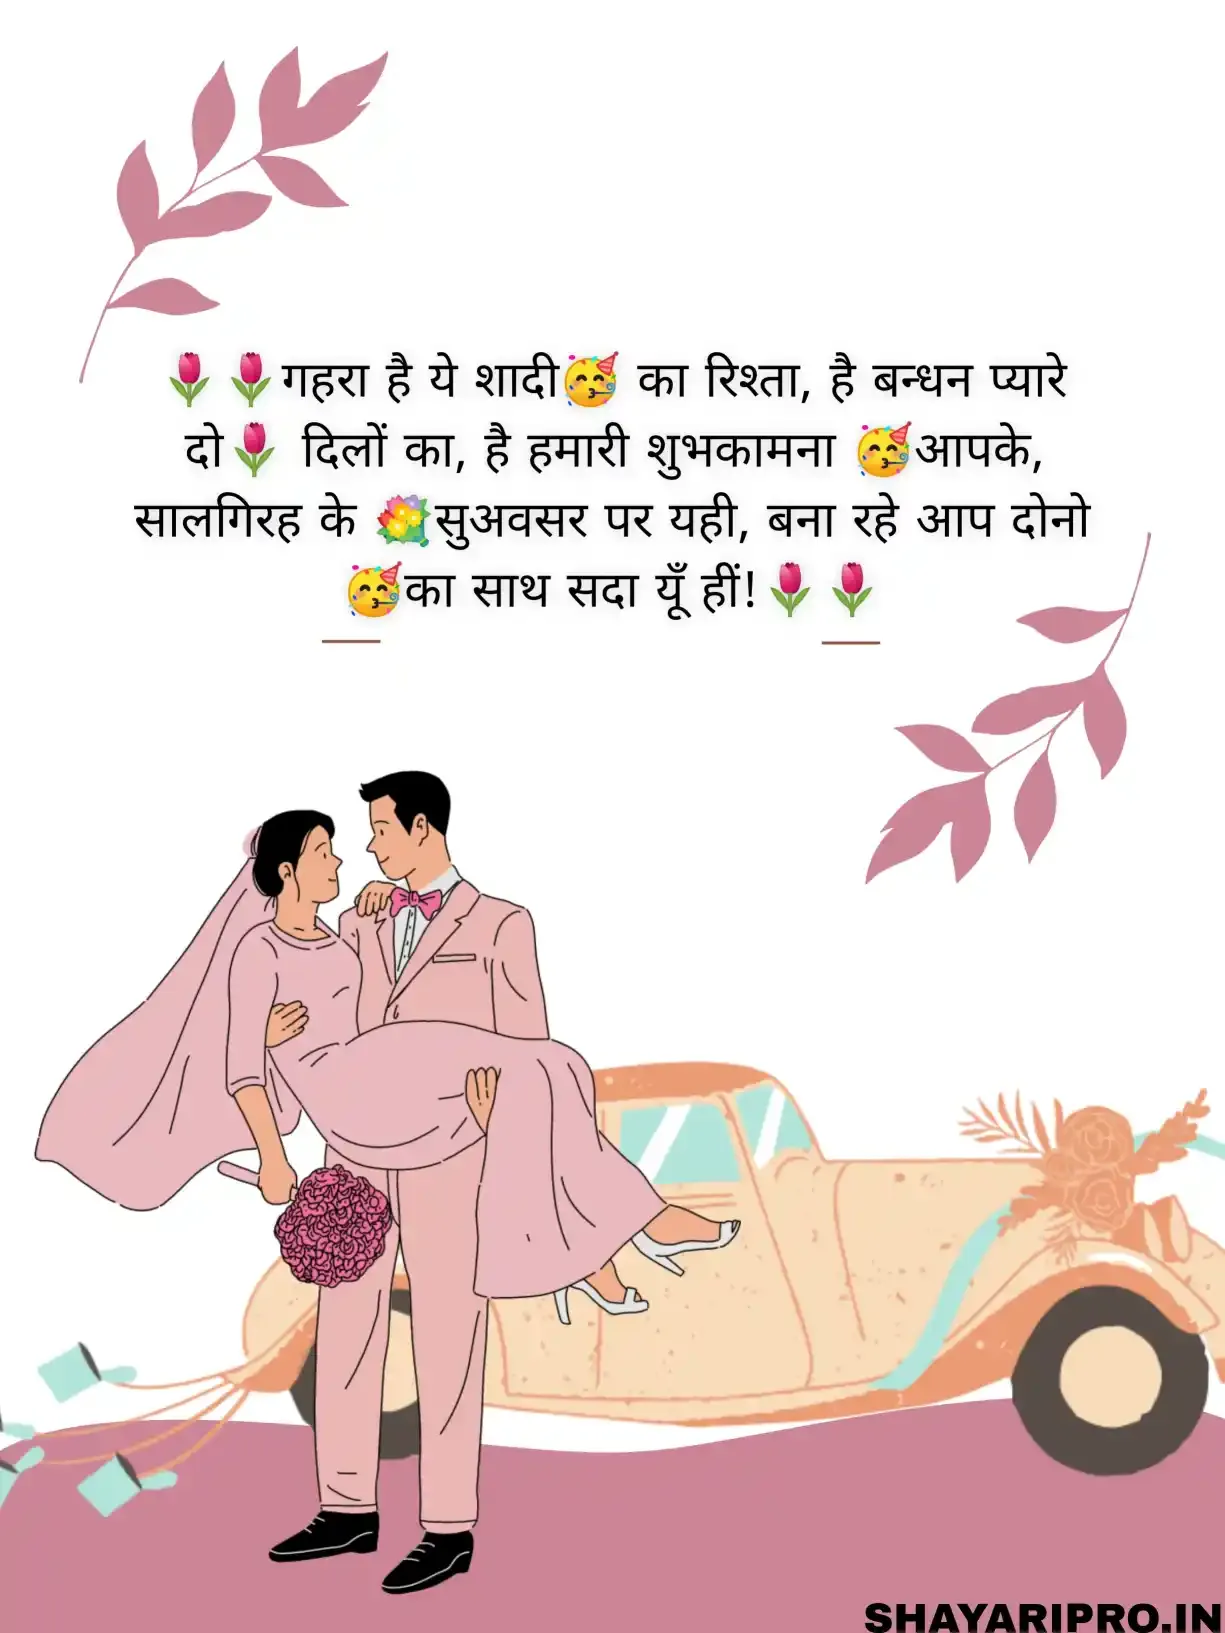 Happy Anniversary To Didi And Jiju Wishes In Hindi